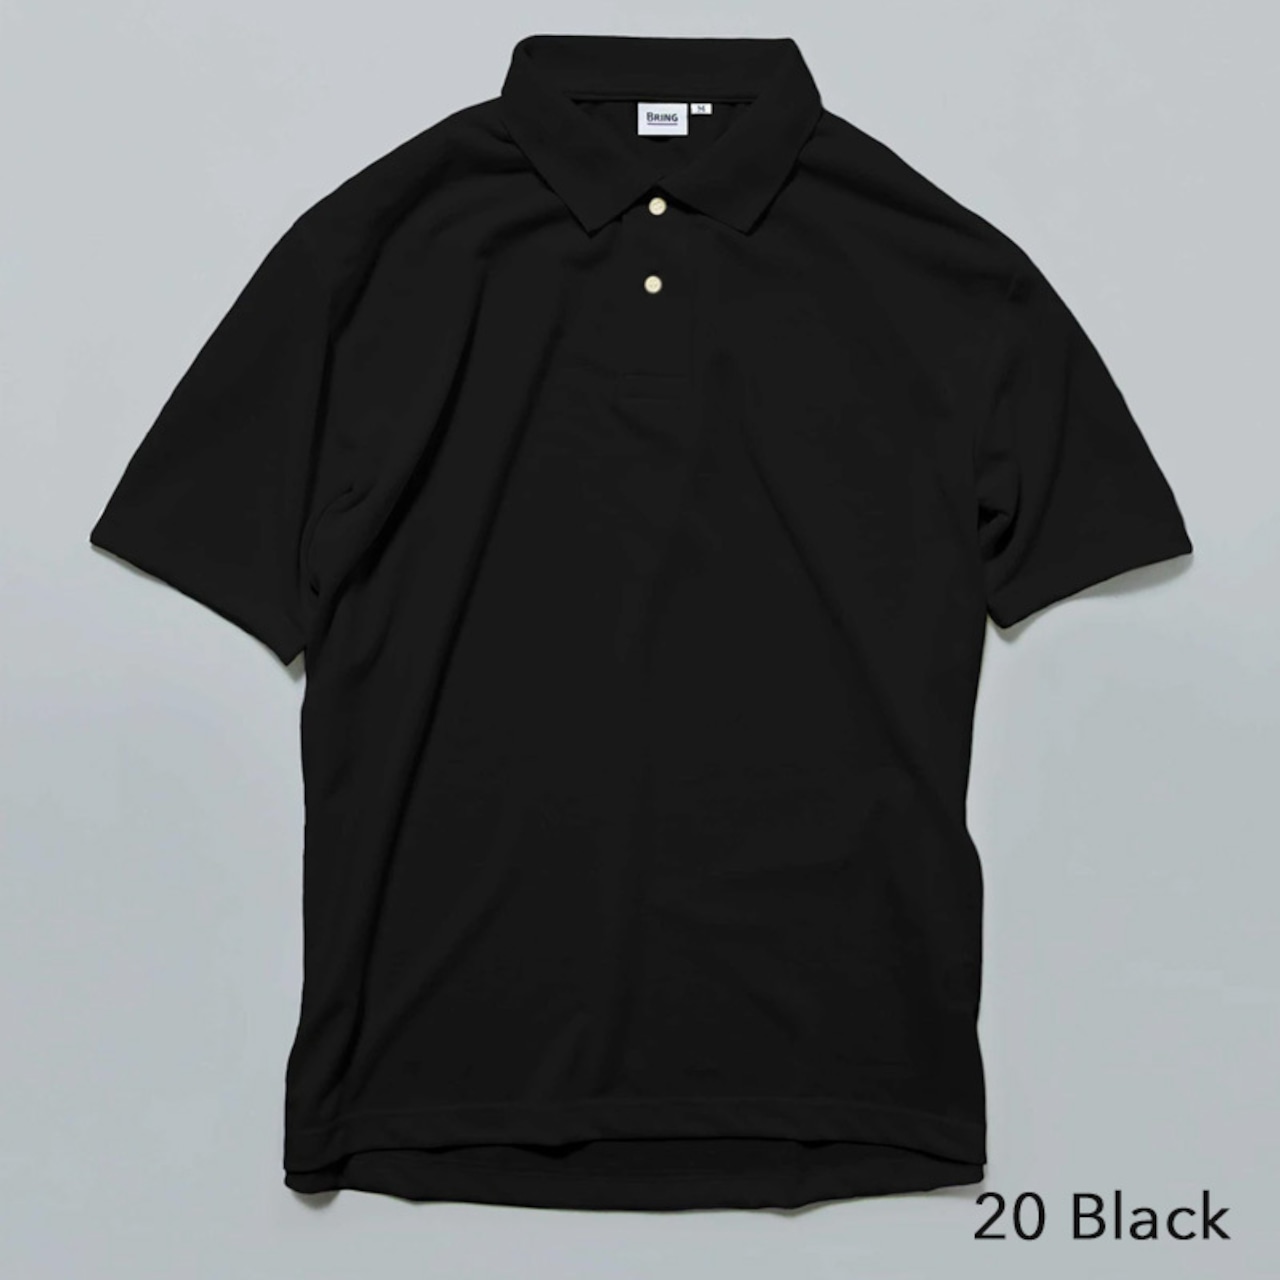 BRING(ブリング) DRYCOTTONY Polo Shirt ポロシャツ 半袖 ユニセックス アウトドア 用品 キャンプ グッズ